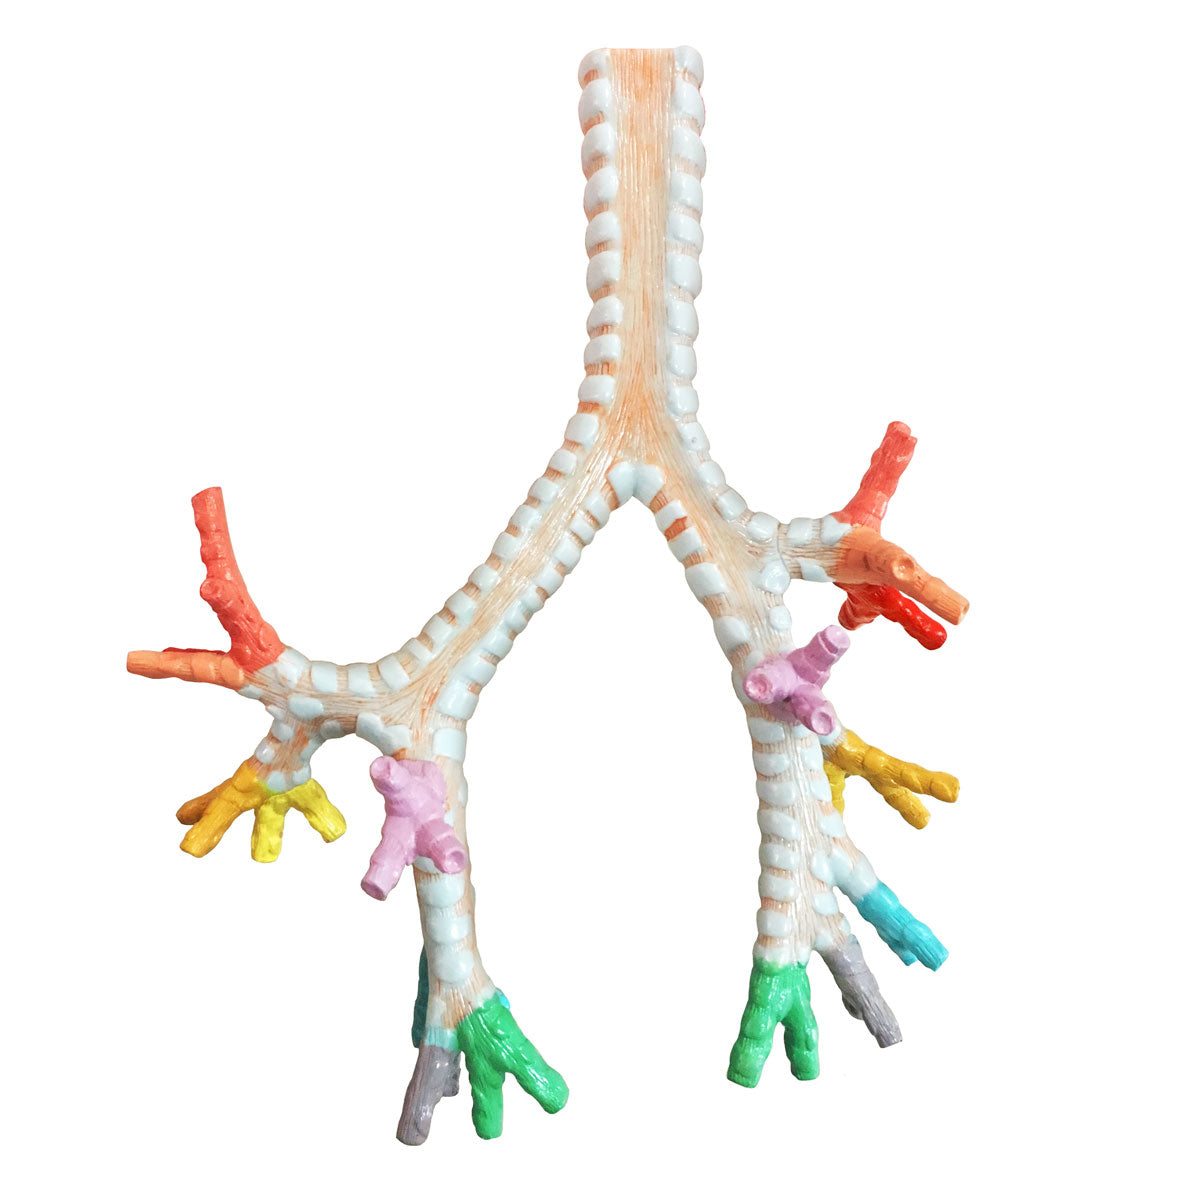 Evotech Scientific Larynx, Trachea, and Bronchi Model